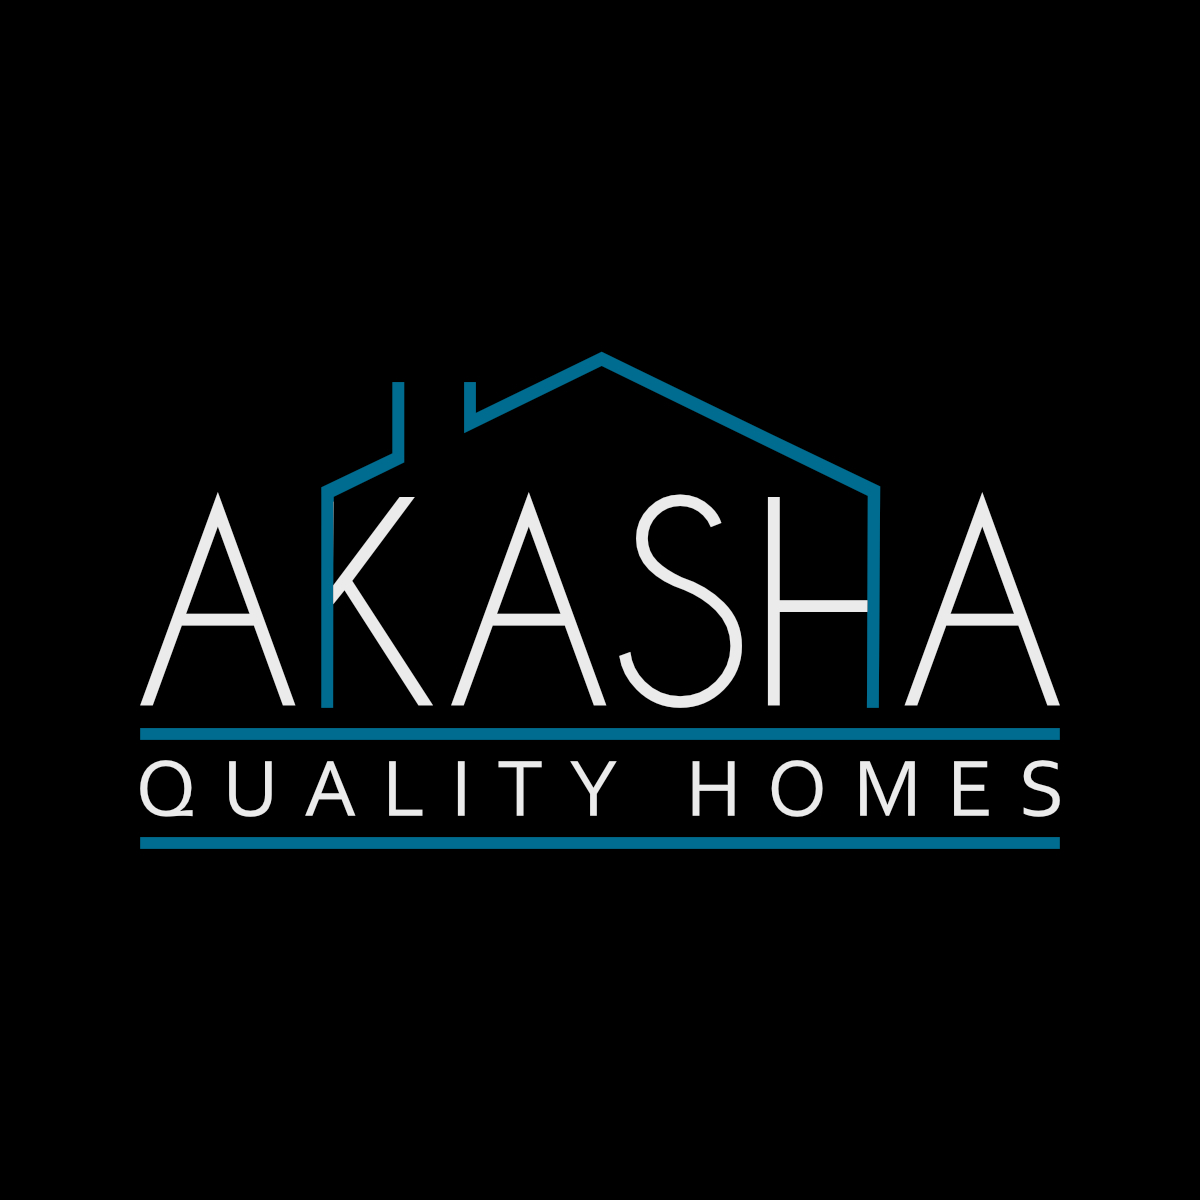 akasha-quality-homes-logo.jpg